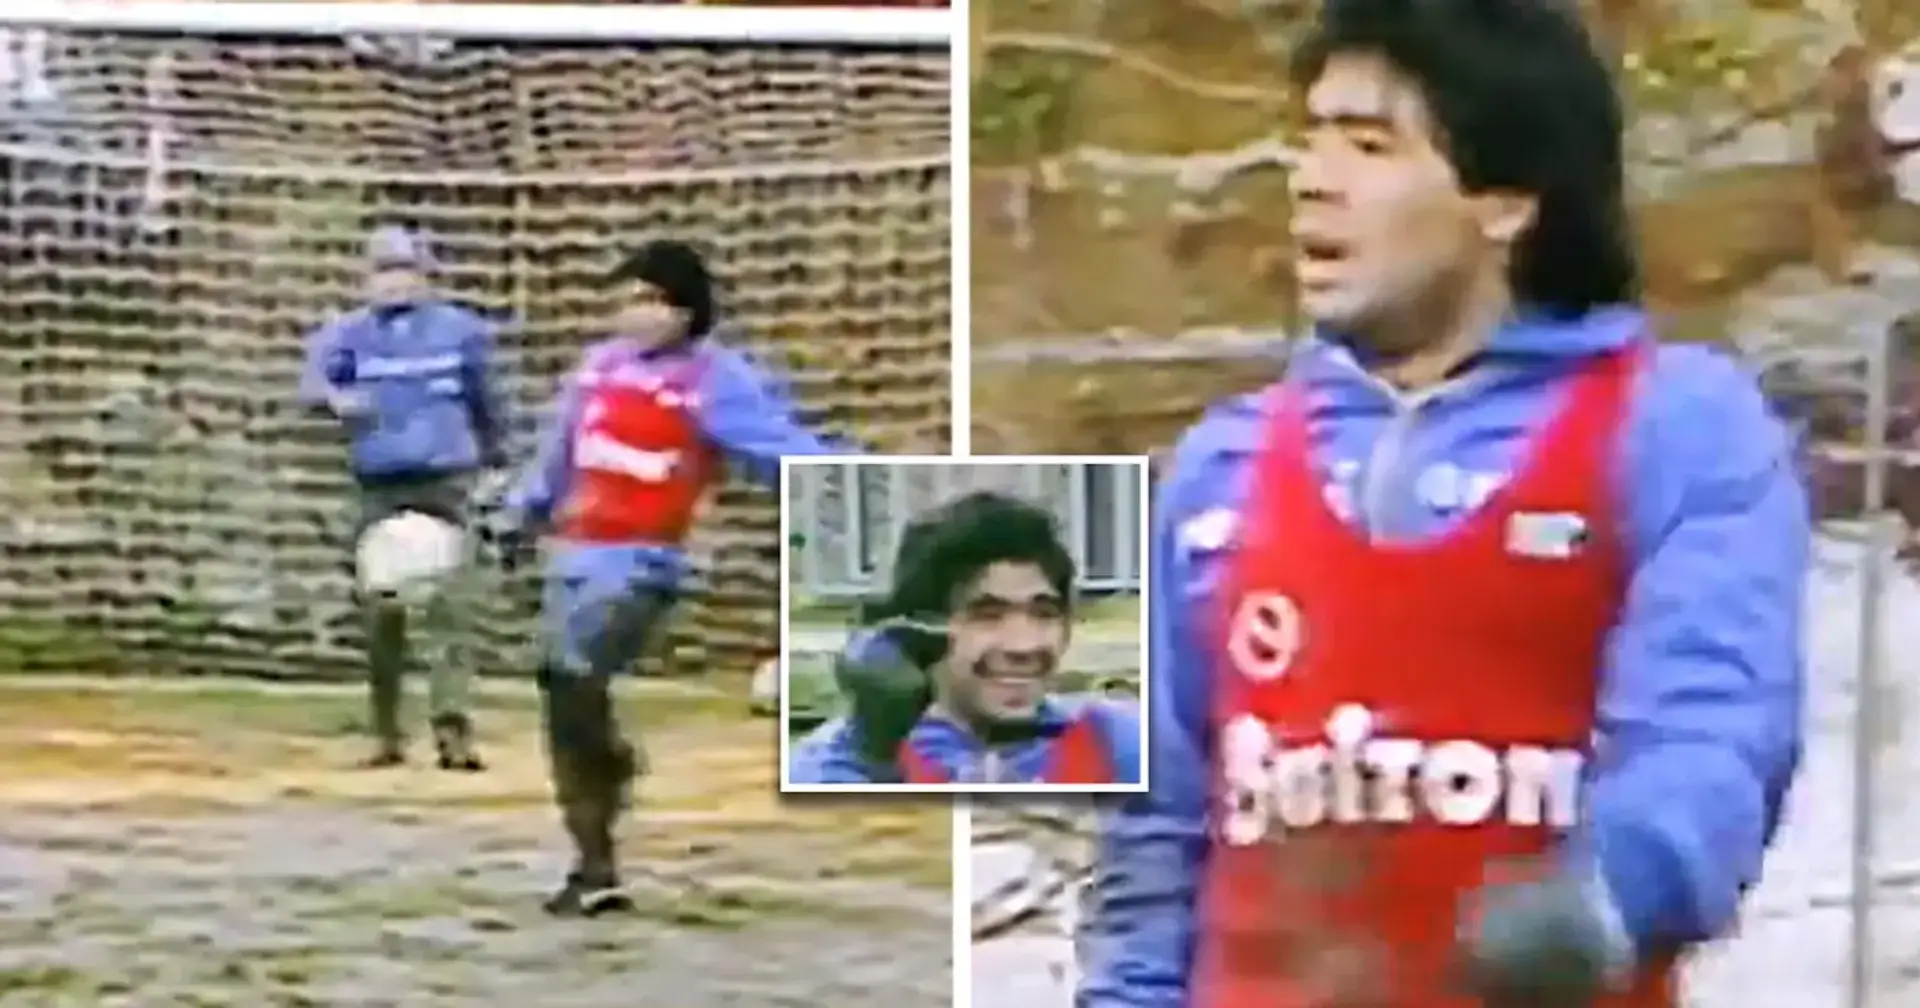 🎥 Archivmaterial: Maradona beim Training im Regen - selbst schreckliche Felder hielten Diego Maradona nicht auf 